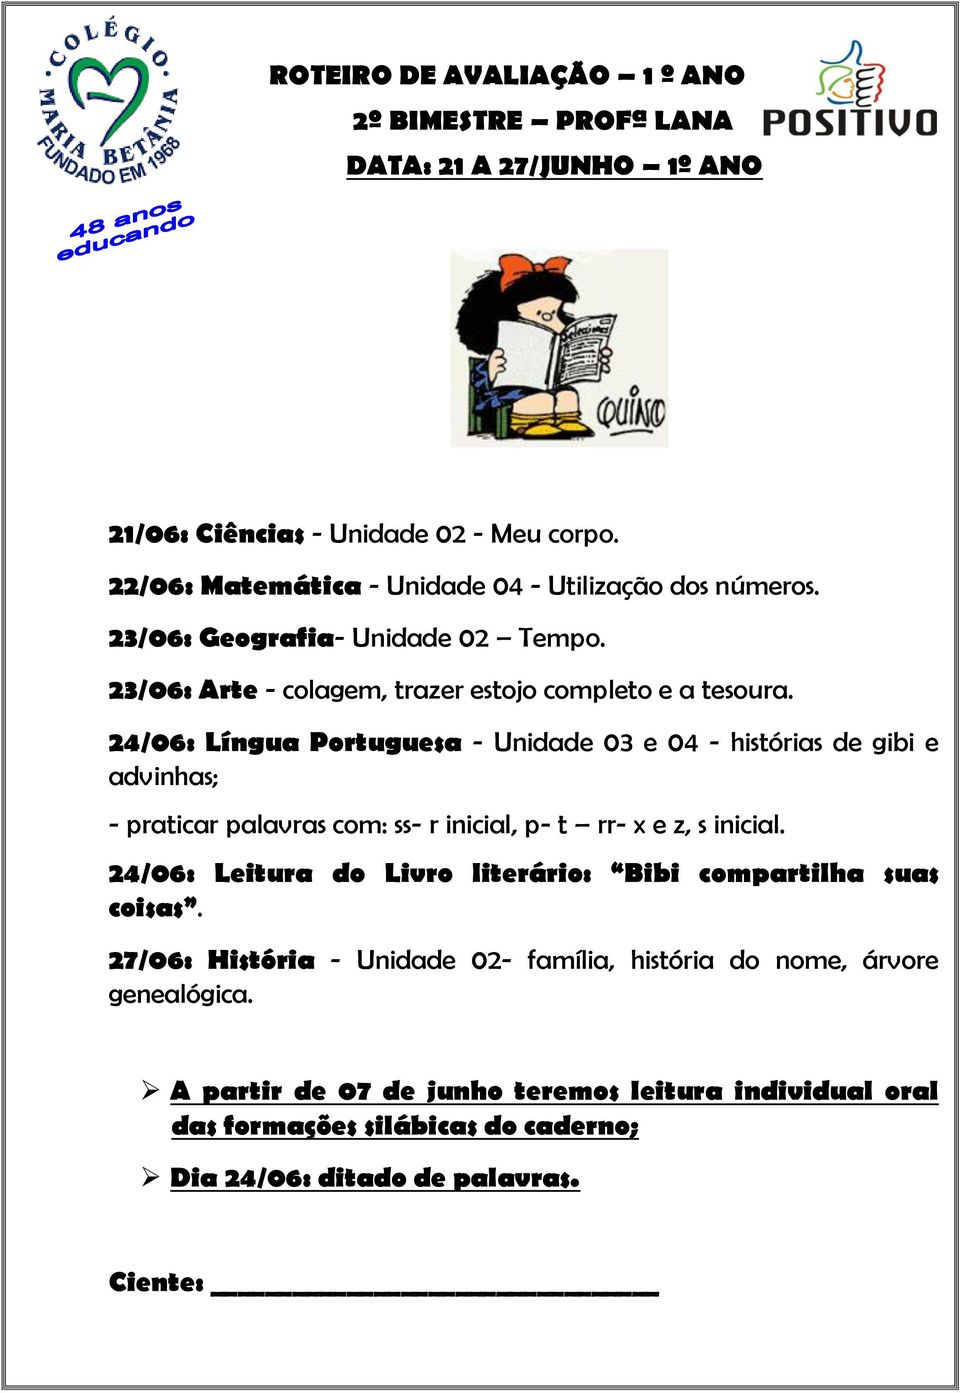 24/06: Língua Portuguesa - Unidade 03 e 04 - histórias de gibi e advinhas; - praticar palavras com: ss- r inicial, p- t rr- x e z, s inicial.